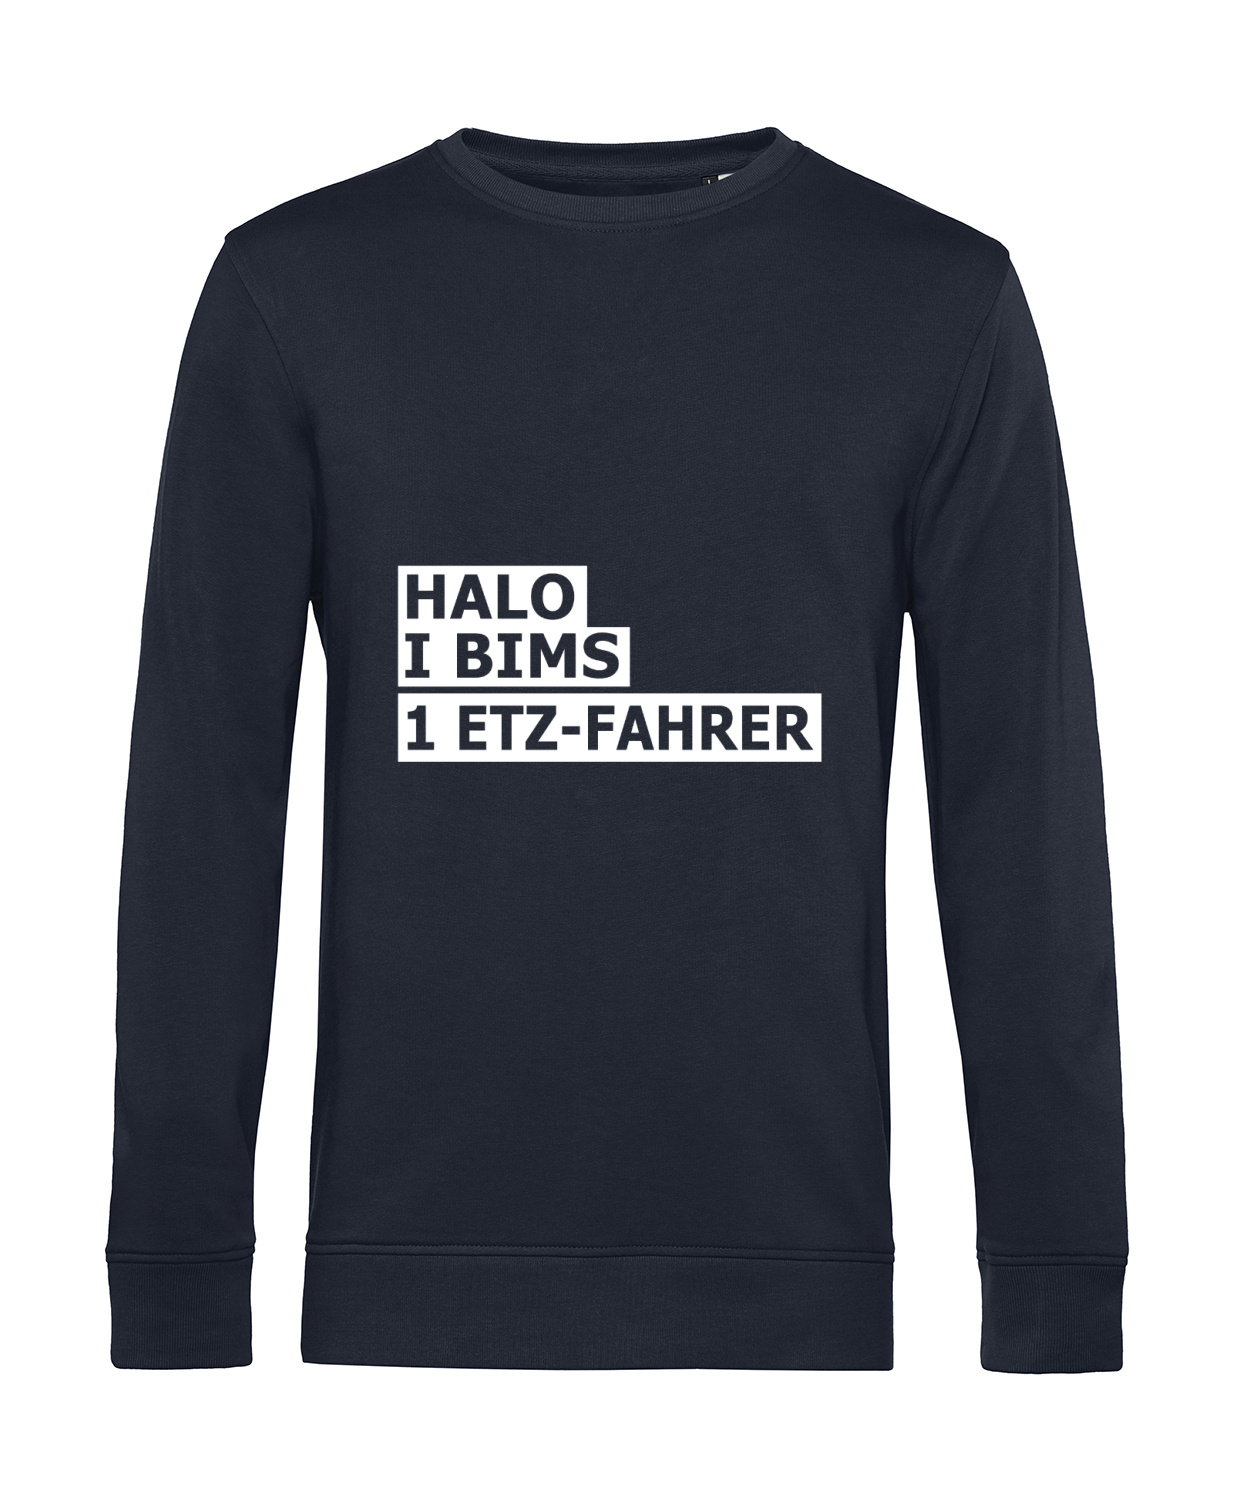 Nachhaltiges Sweatshirt Herren 2Takter - Halo I bims 1 ETZ-Fahrer